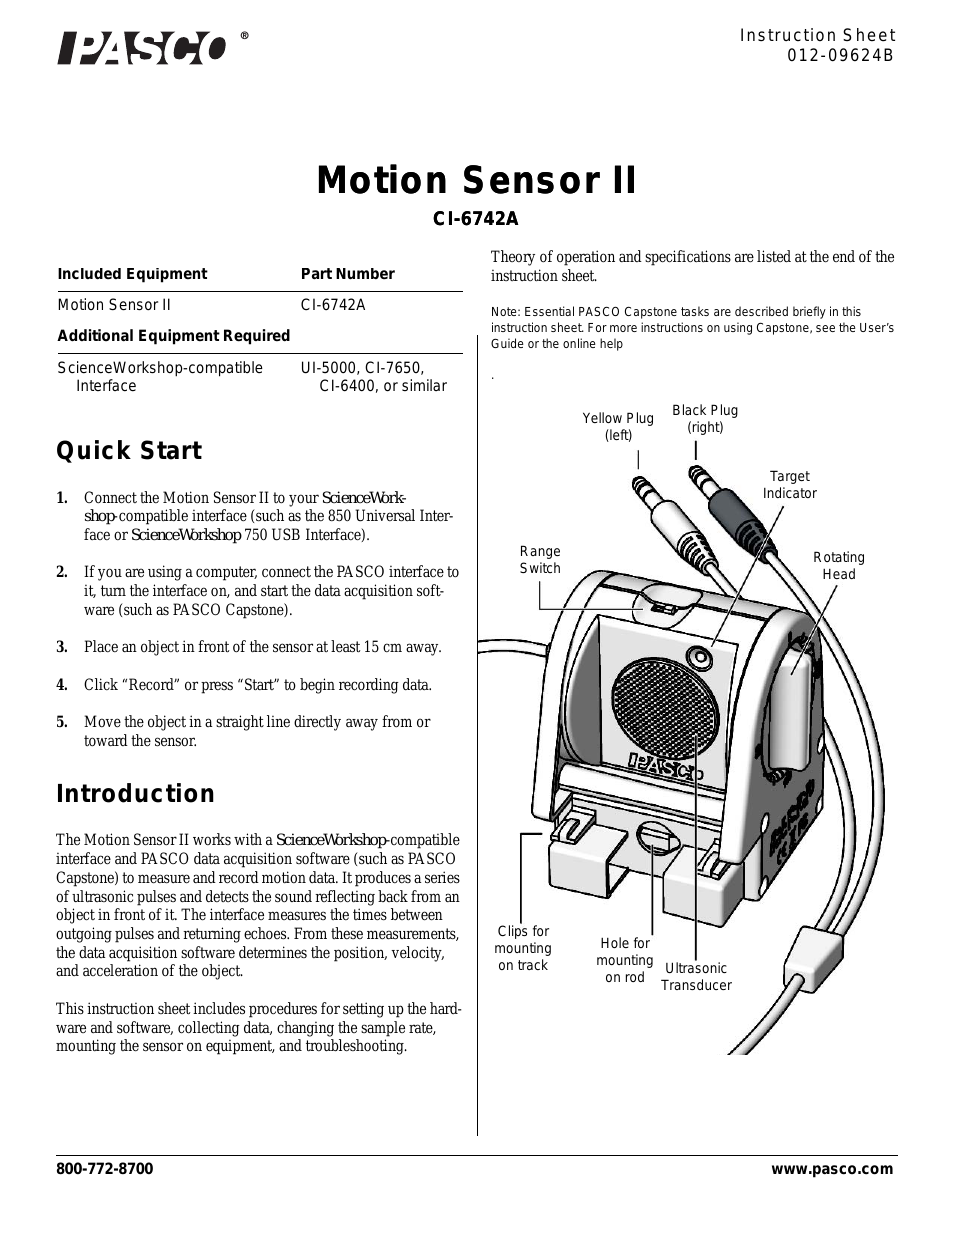 CI-6742A Motion Sensor II